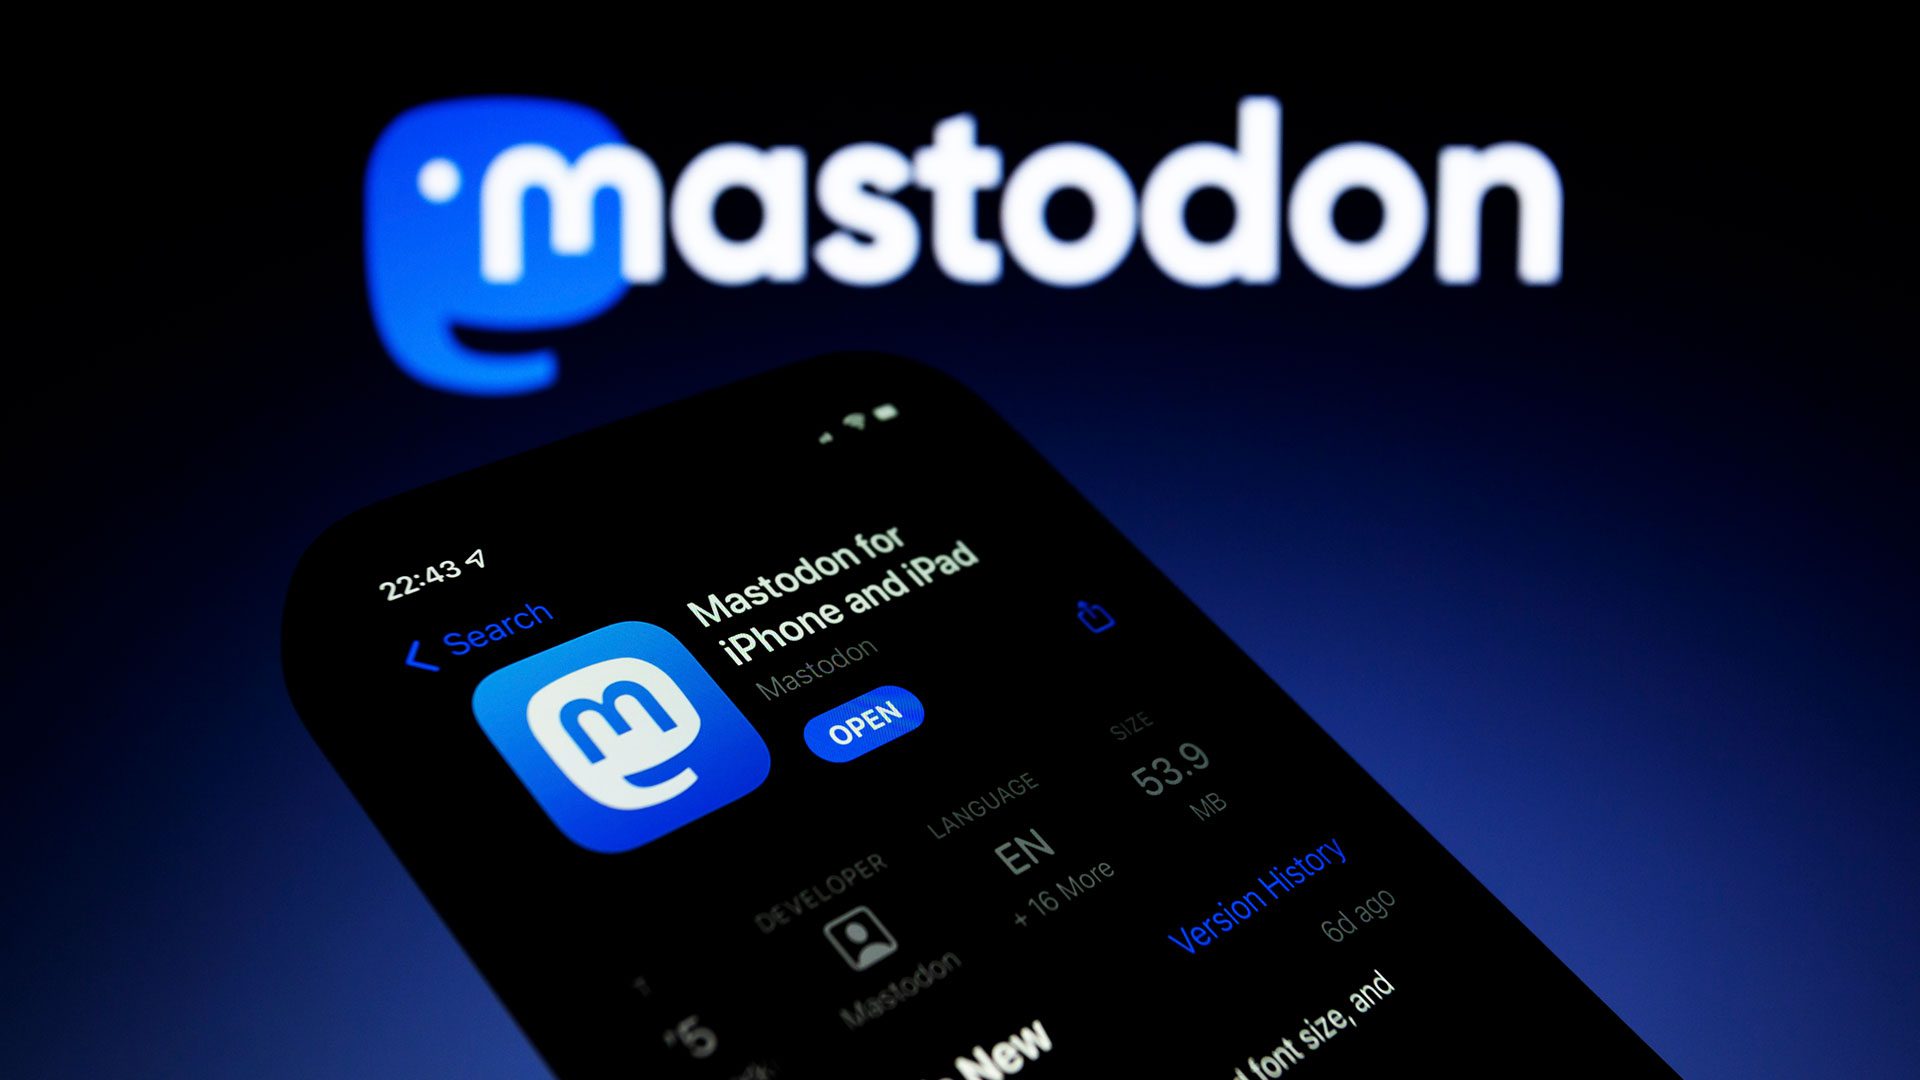 Mastodon: Ξεκίνησε η μεγάλη «μετανάστευση» από το Twitter